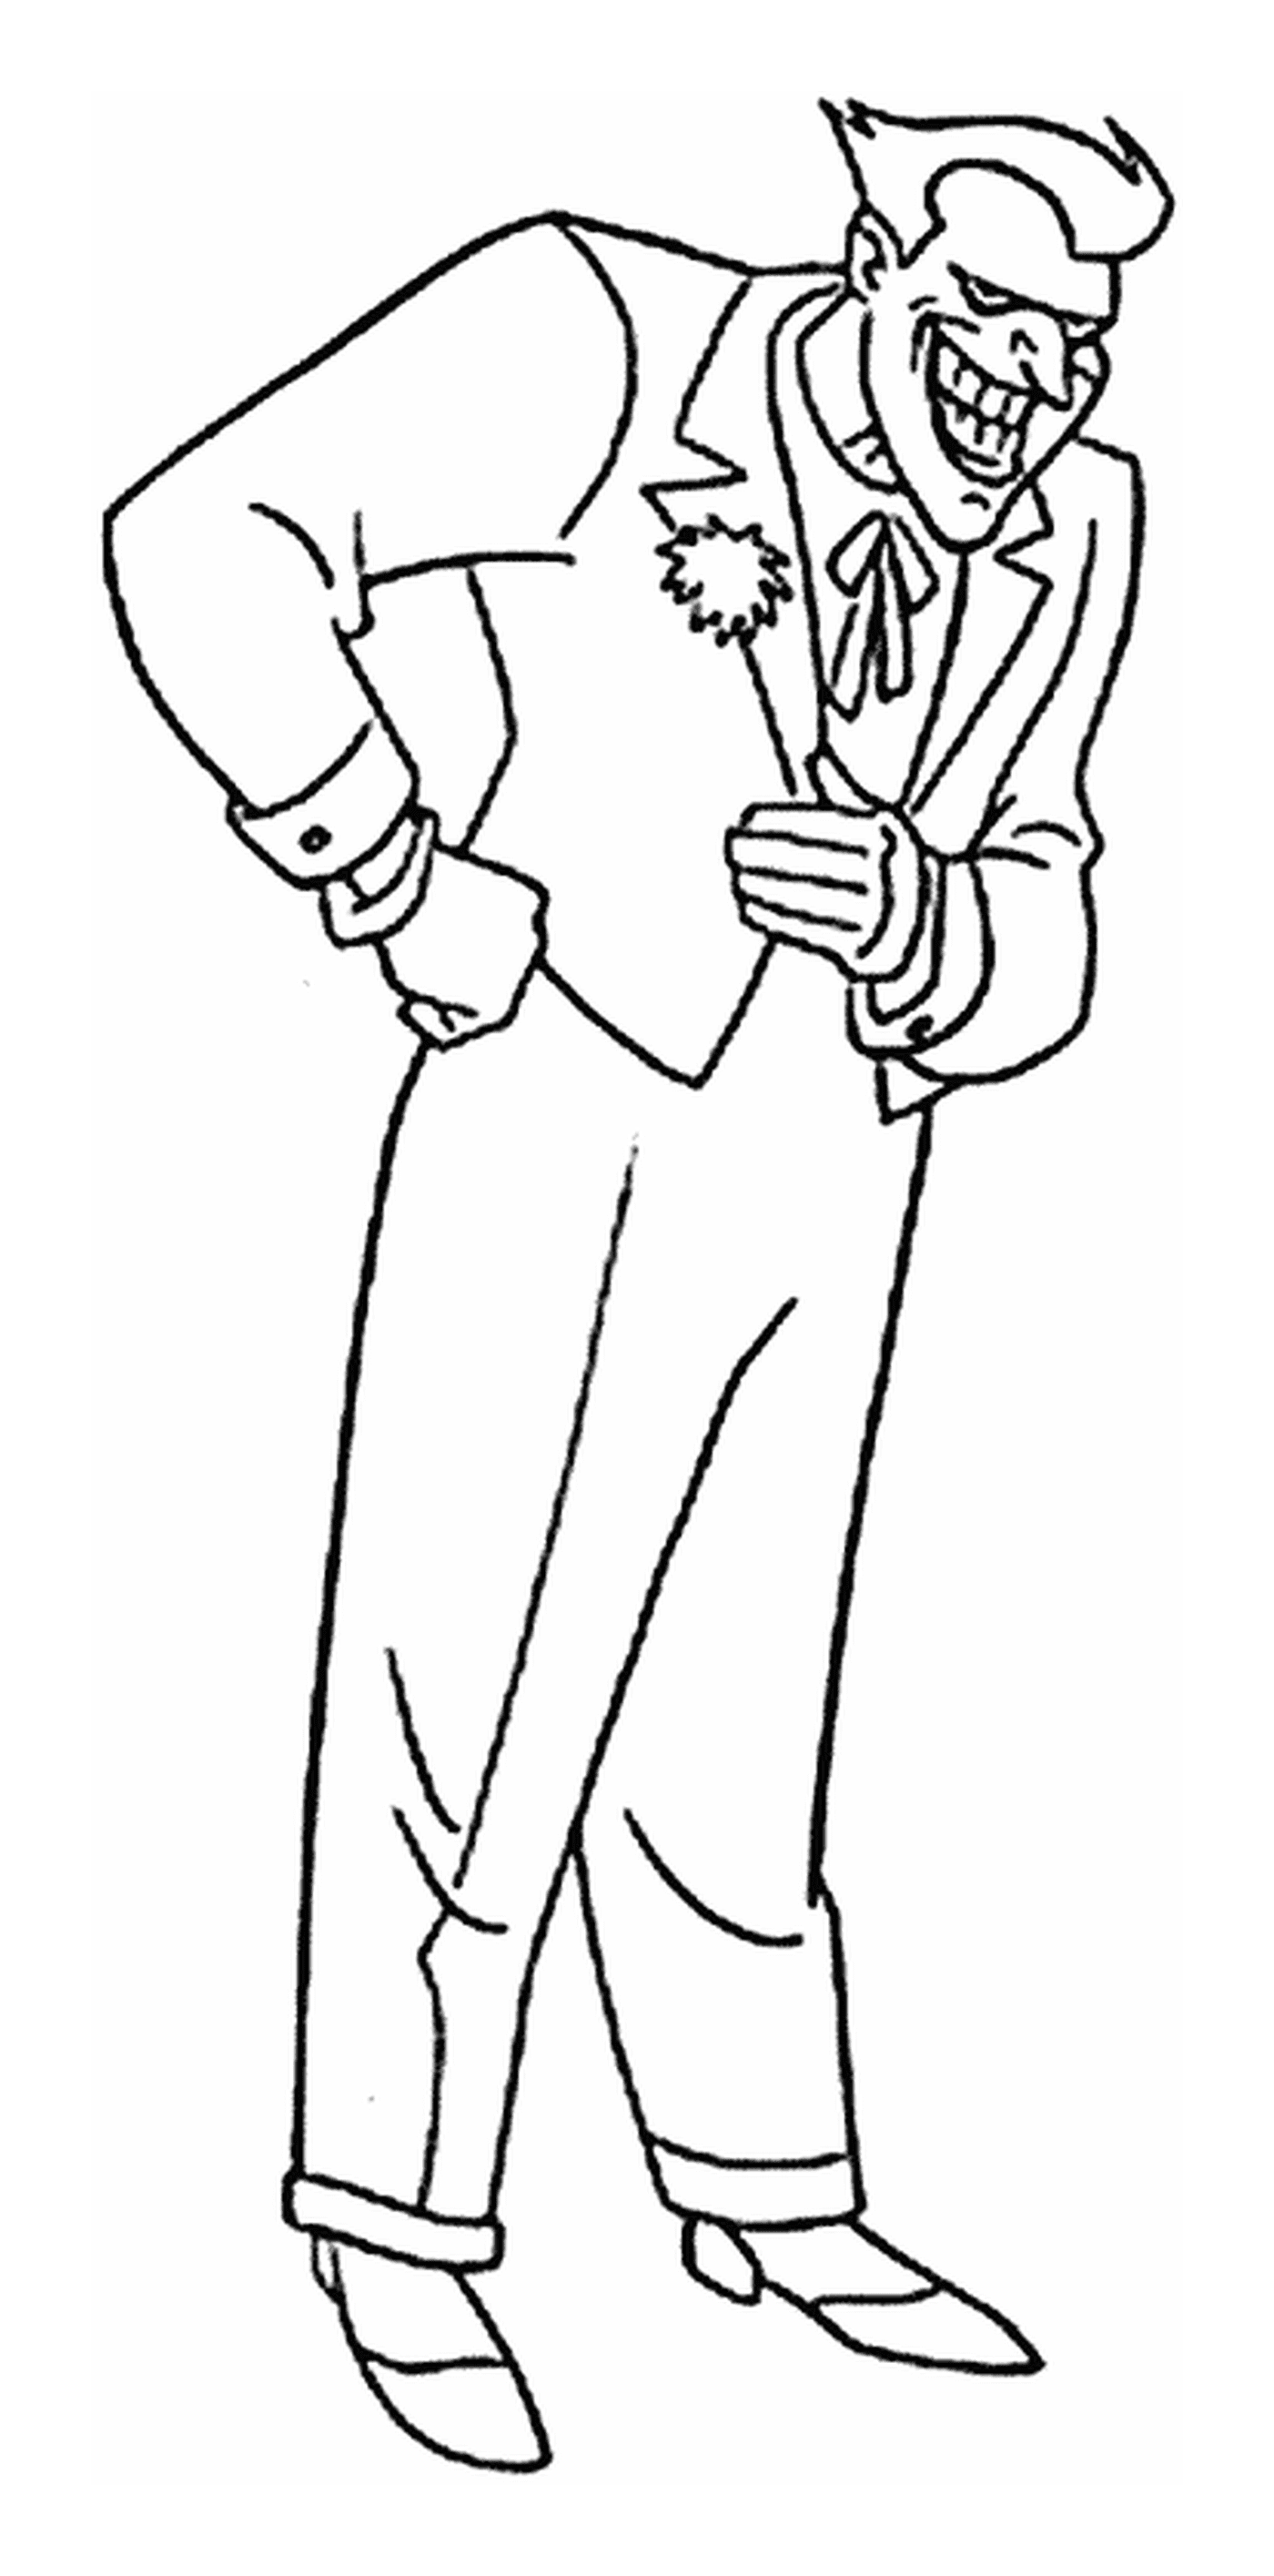  Un hombre con traje y corbata 